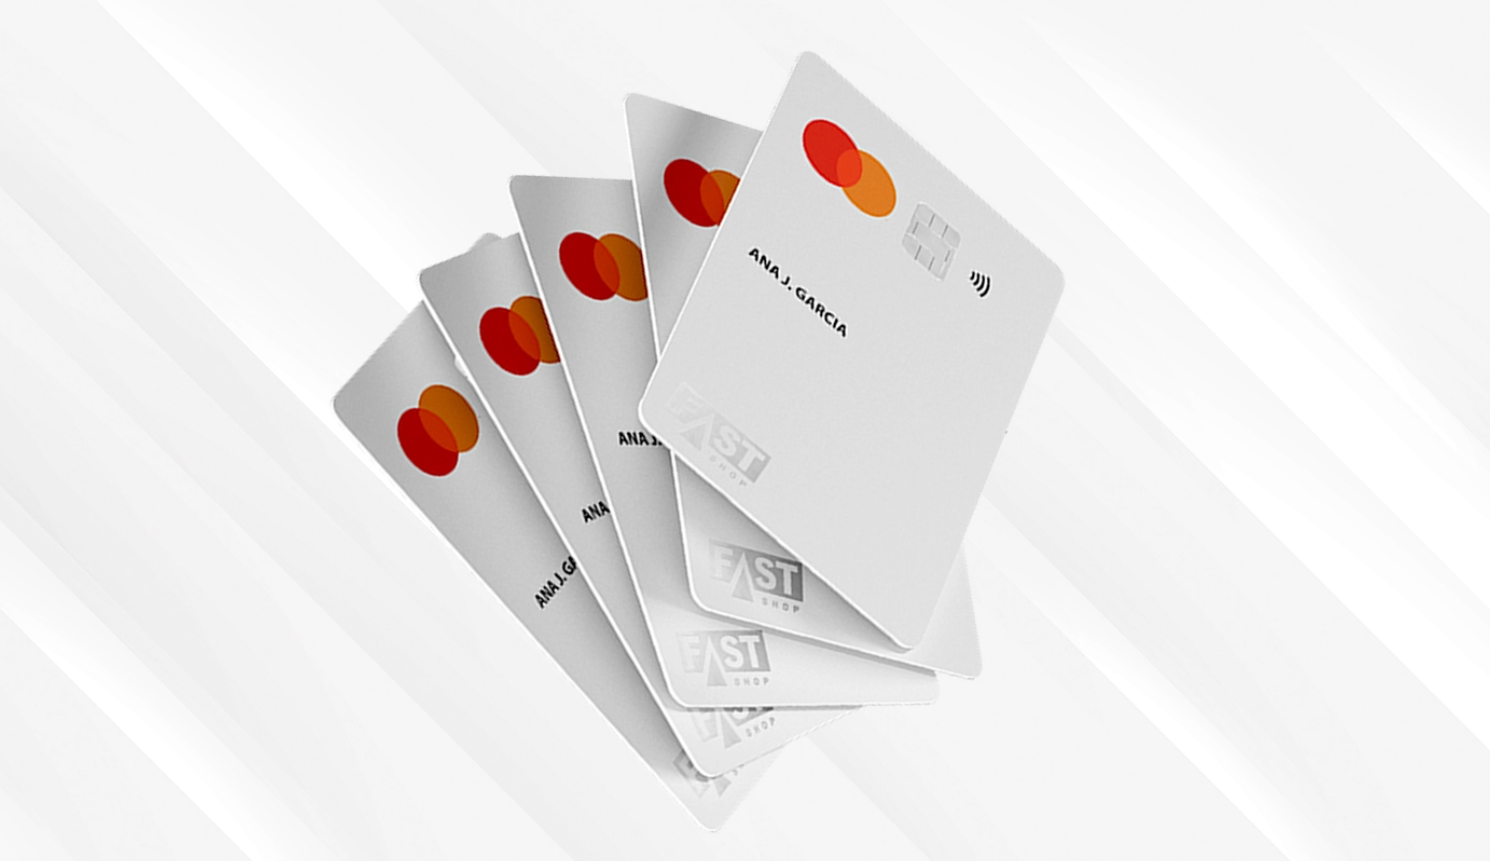 Fast Shop Pay: conheça o cartão de crédito que dá cashback de 2% em todas as compras feitas na varejista